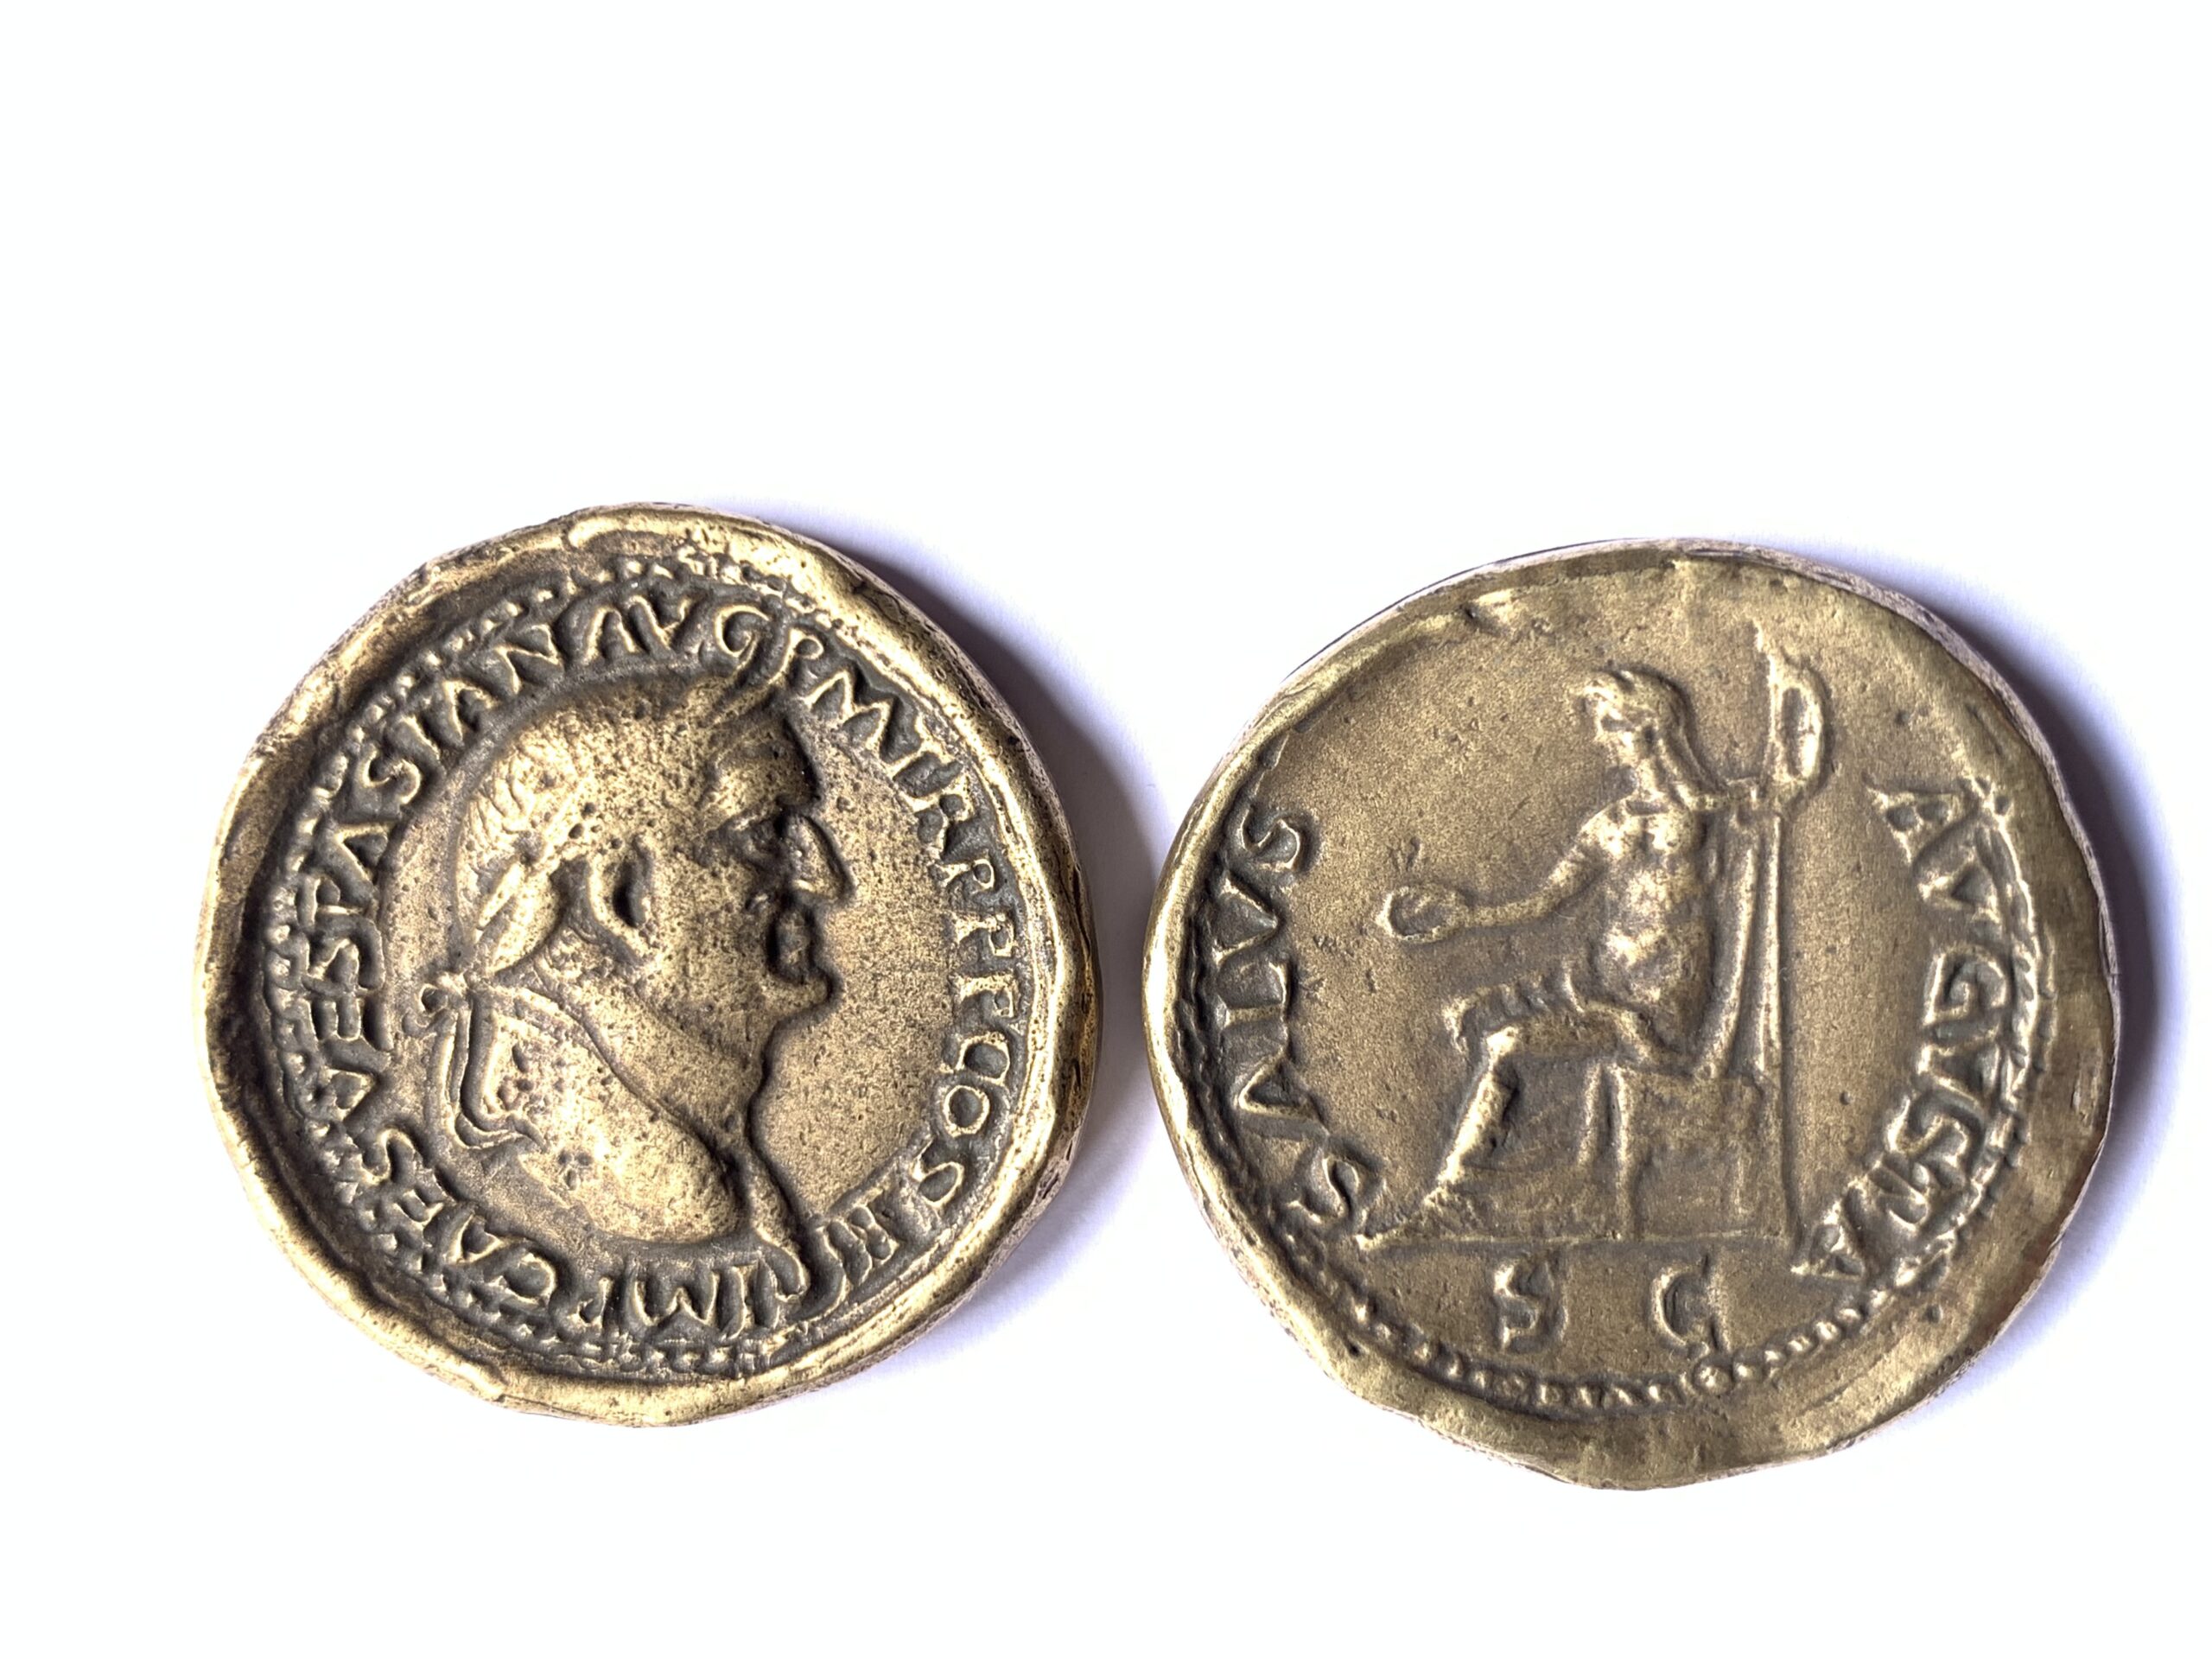 Vespasiano Salus.